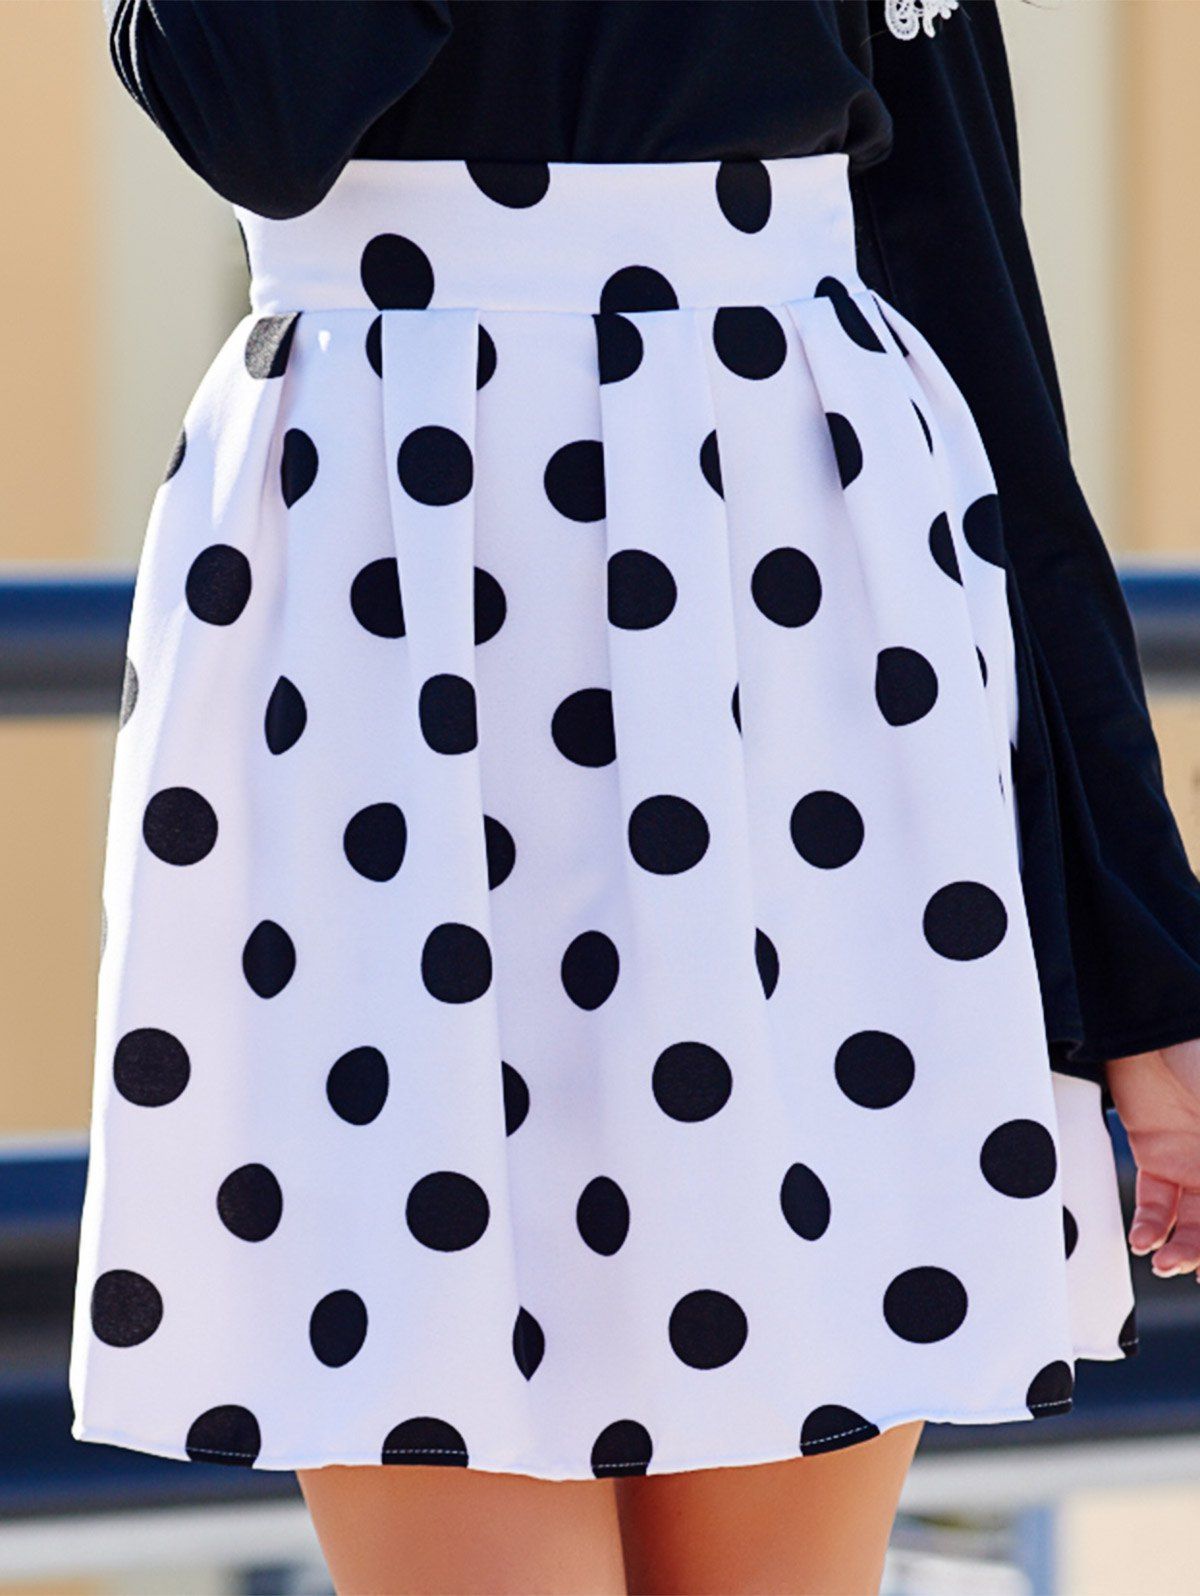 Sweet High-Waisted Ruffled Polka Dot Women's Skirt - WHITE/BLACK S